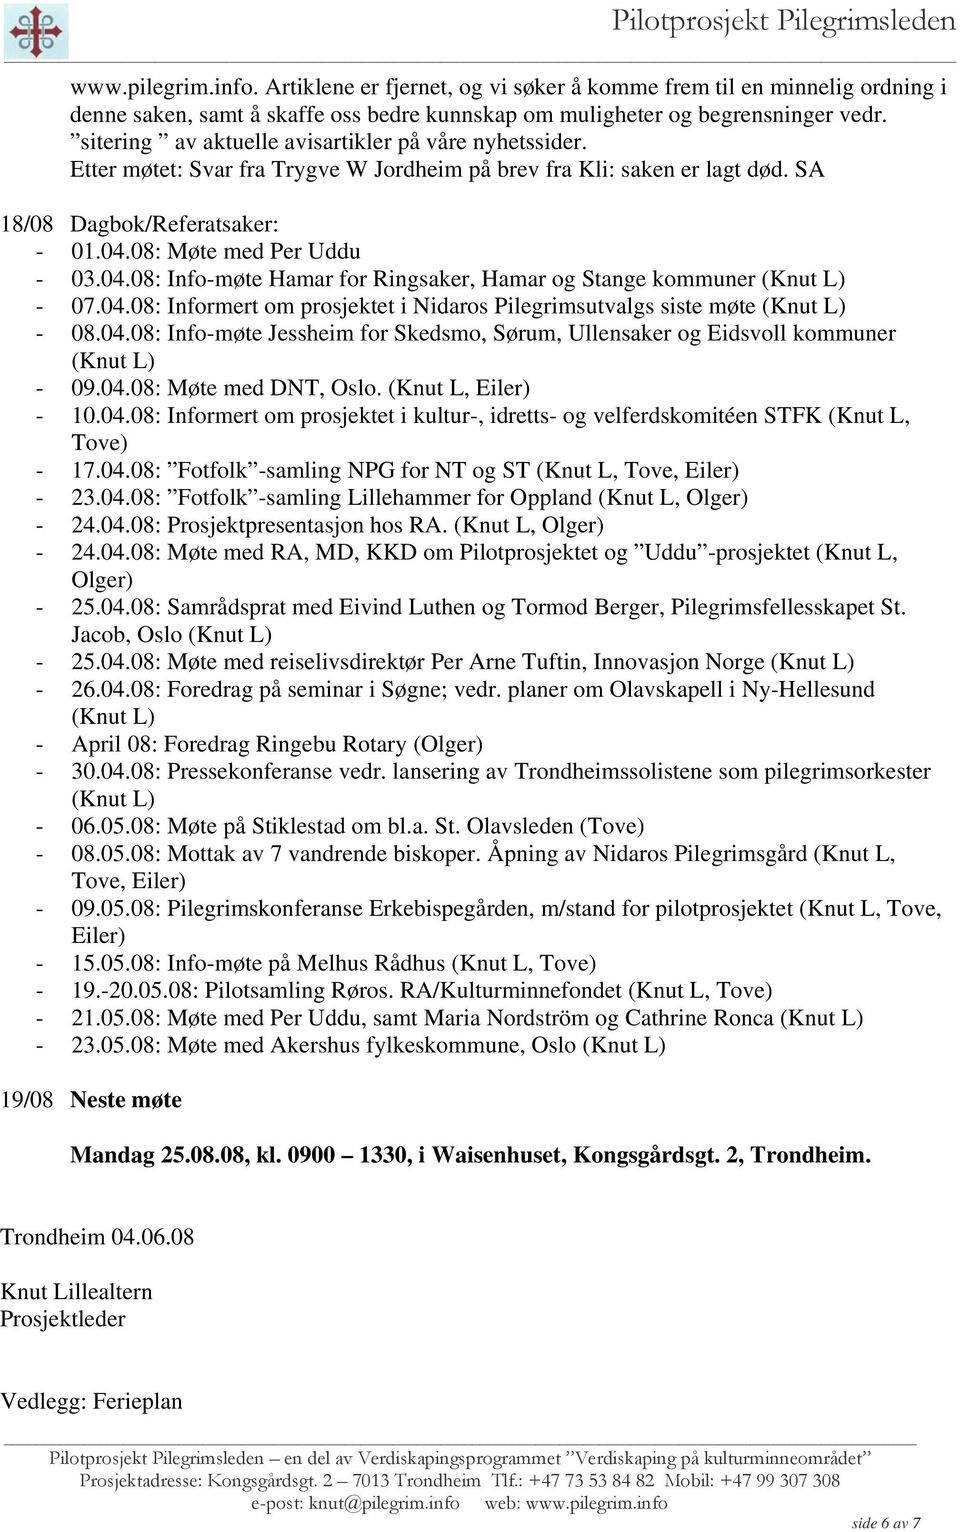 08: Møte med Per Uddu - 03.04.08: Info-møte Hamar for Ringsaker, Hamar og Stange kommuner (Knut L) - 07.04.08: Informert om prosjektet i Nidaros Pilegrimsutvalgs siste møte (Knut L) - 08.04.08: Info-møte Jessheim for Skedsmo, Sørum, Ullensaker og Eidsvoll kommuner (Knut L) - 09.